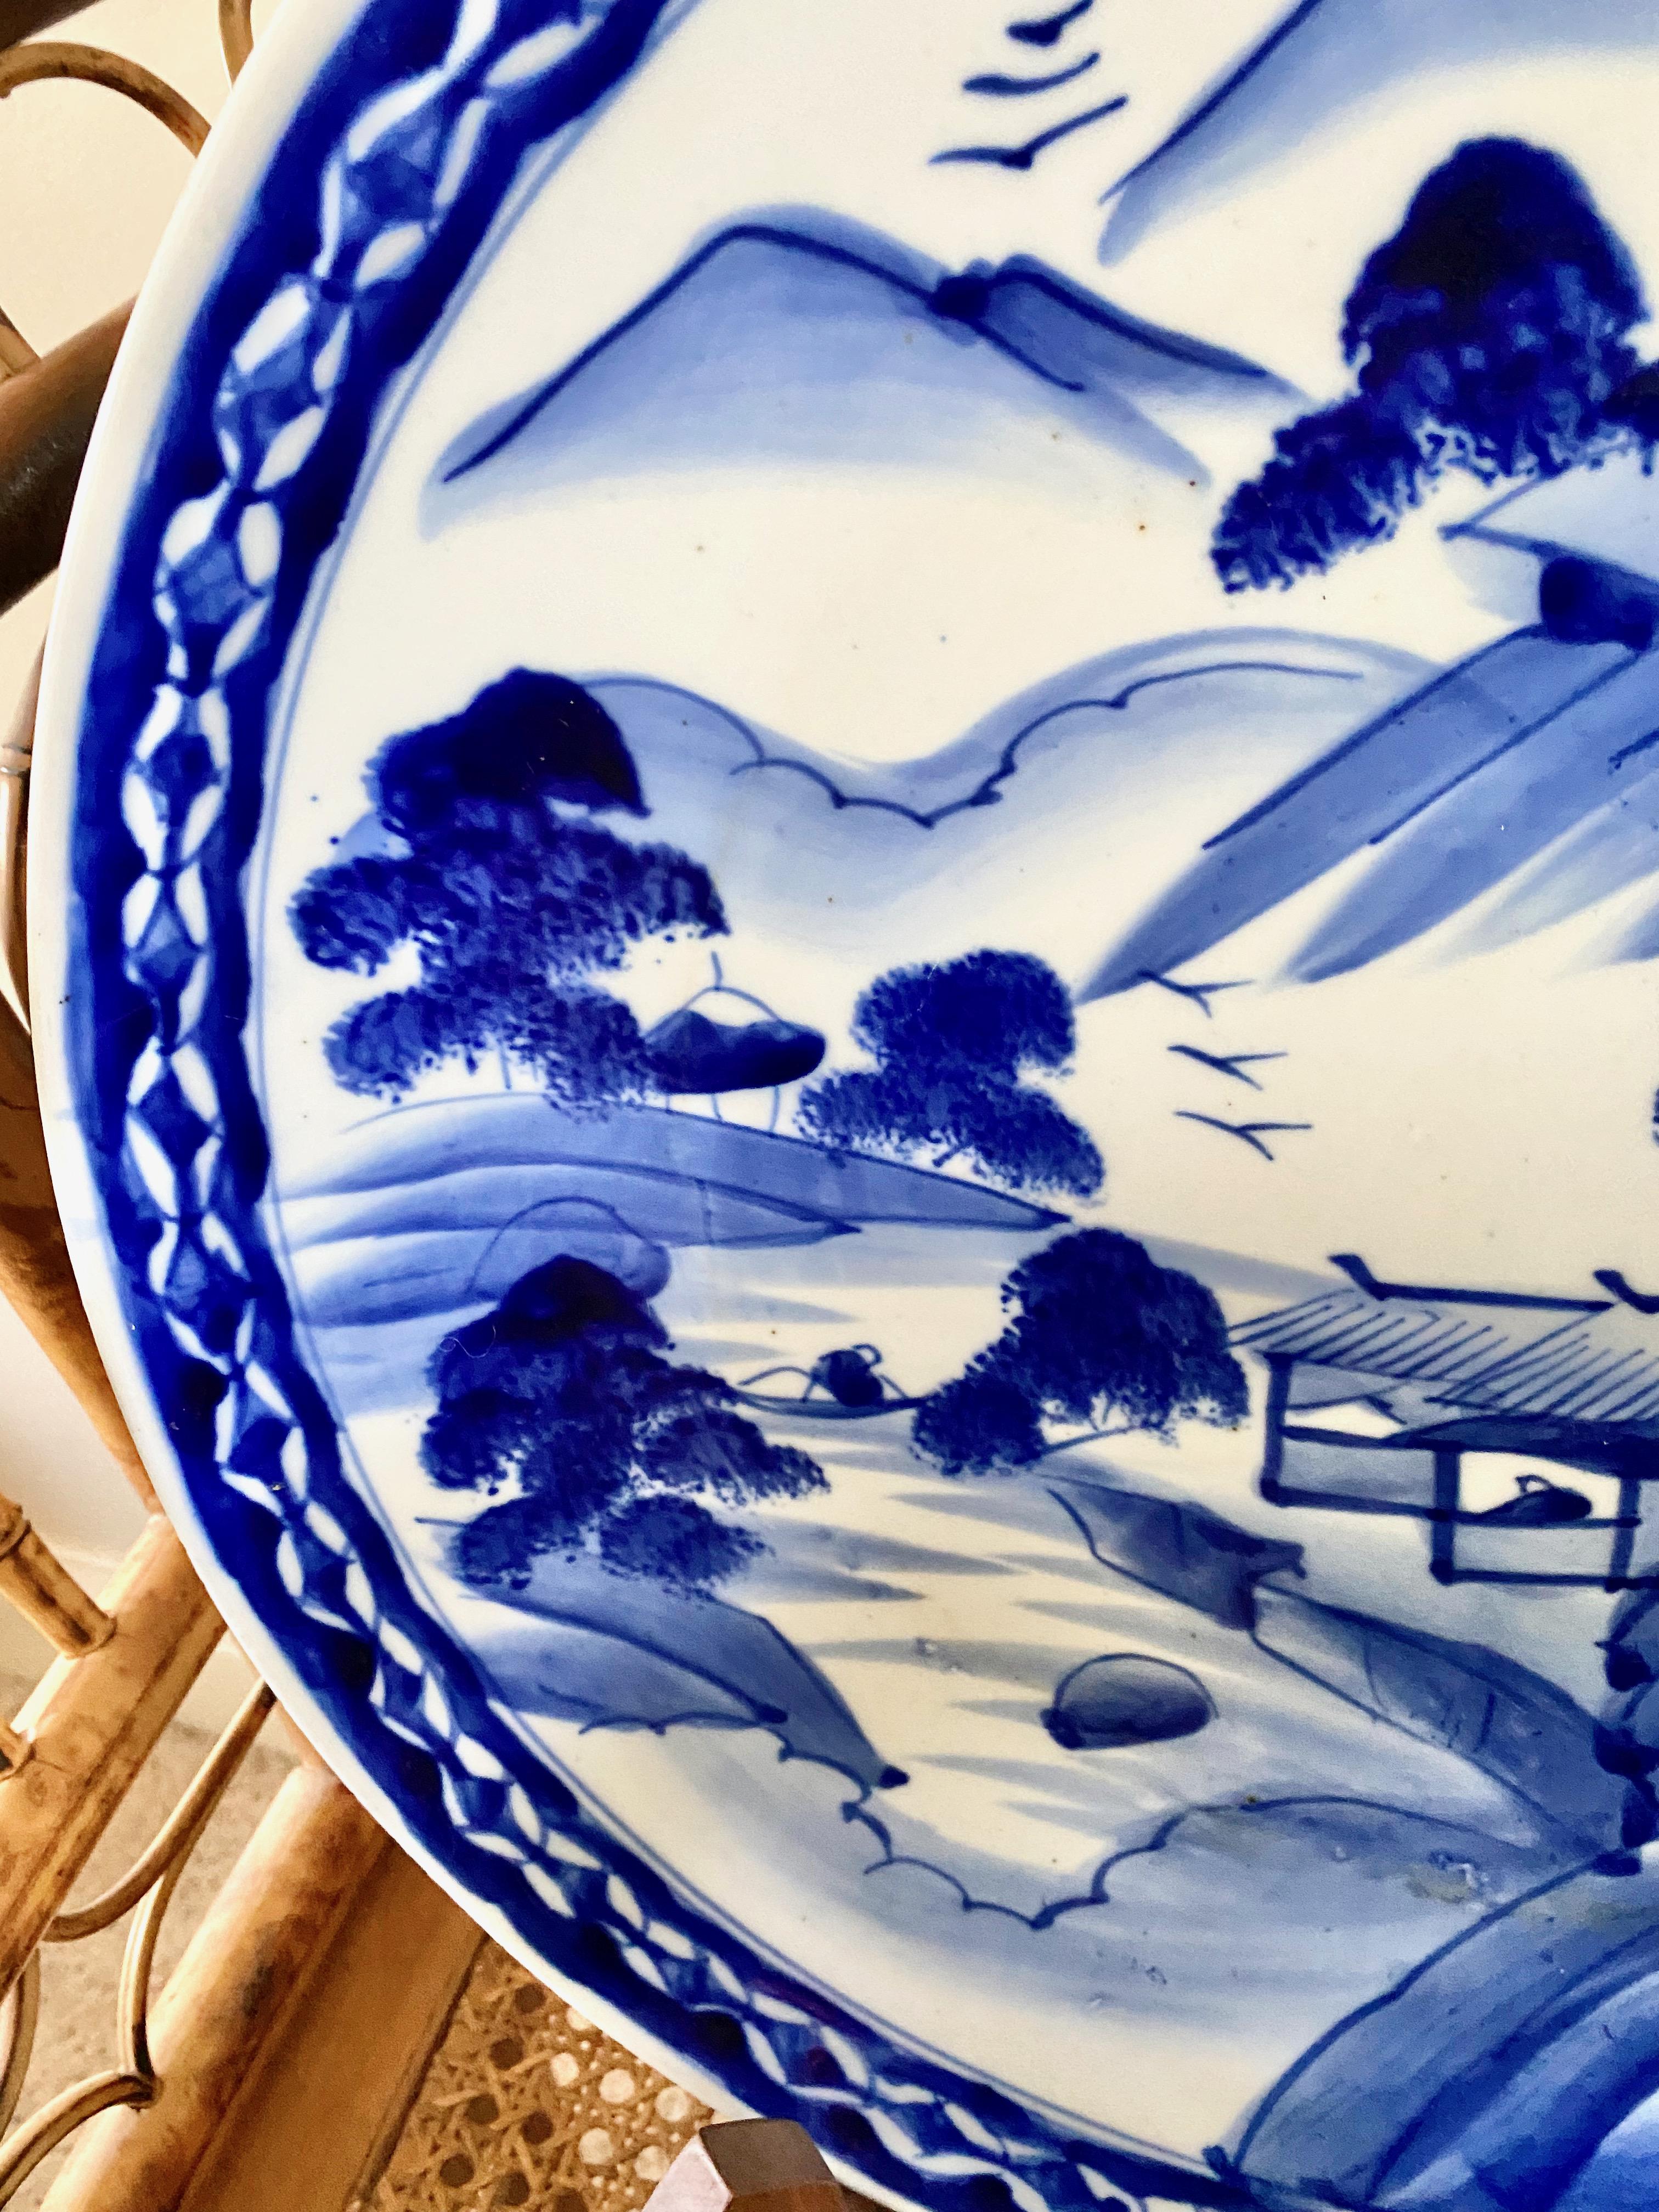 Dies ist eine charmante große Mitte des 20. Jahrhunderts japanischen Arita blau & weiß Ladegerät, dass ein Land Berg-Szene zeigt. Das Ladegerät wäre eine tolle Ergänzung für eine Landhausküche oder einen Frühstücksraum. Das Ladegerät ist insgesamt